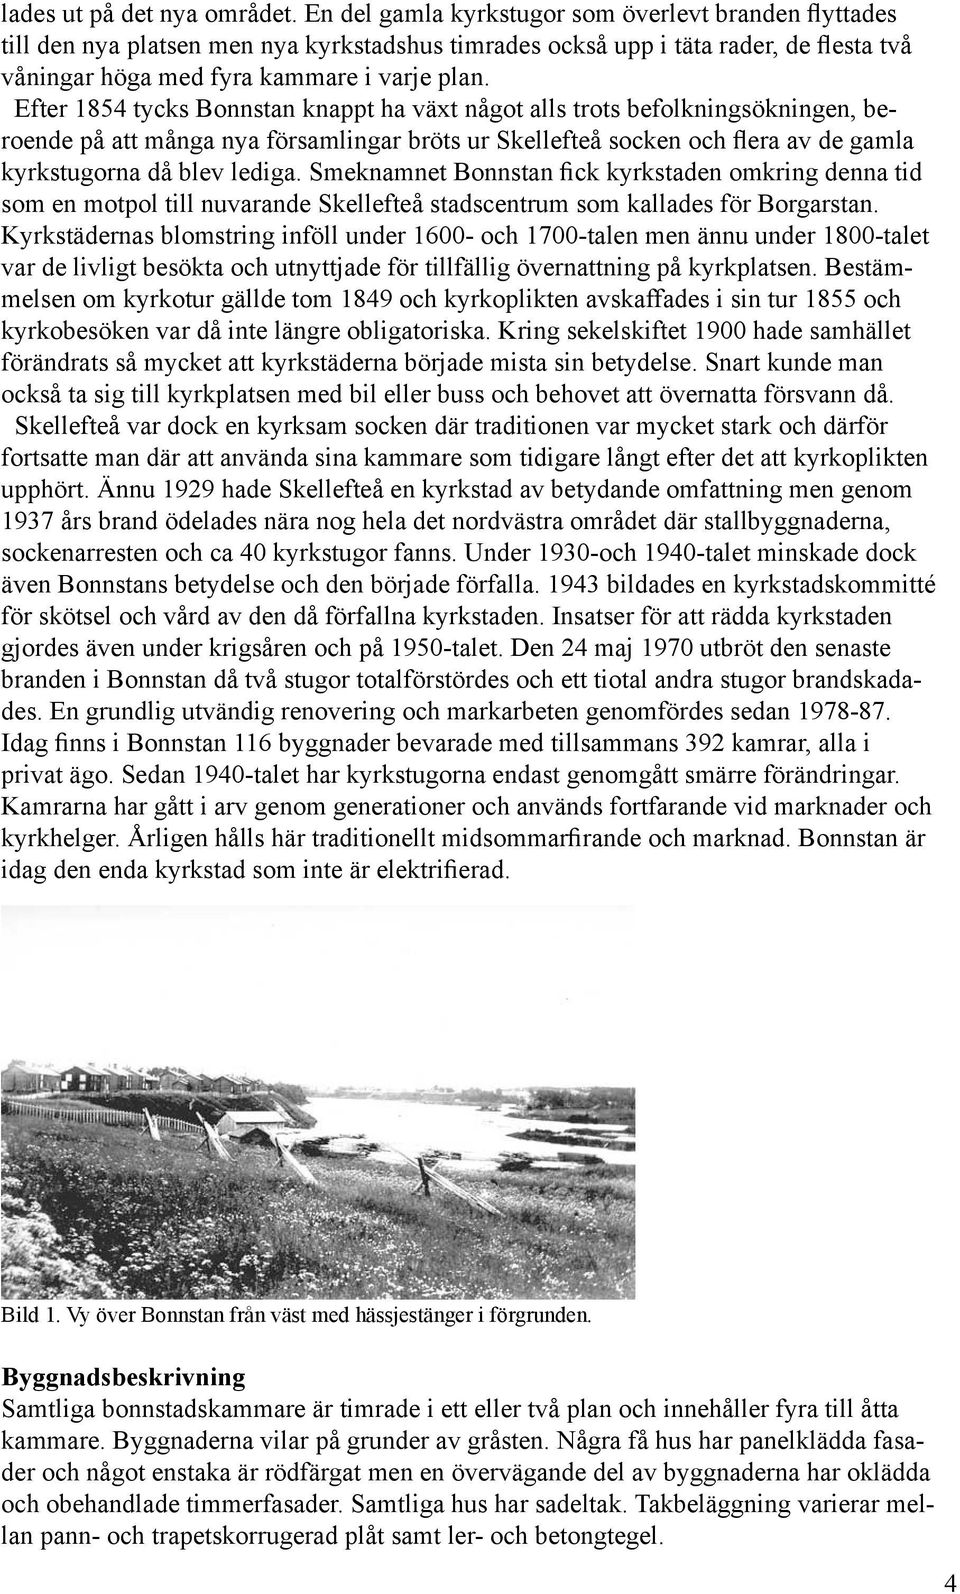 Efter 1854 tycks Bonnstan knappt ha växt något alls trots befolkningsökningen, beroende på att många nya församlingar bröts ur Skellefteå socken och flera av de gamla kyrkstugorna då blev lediga.